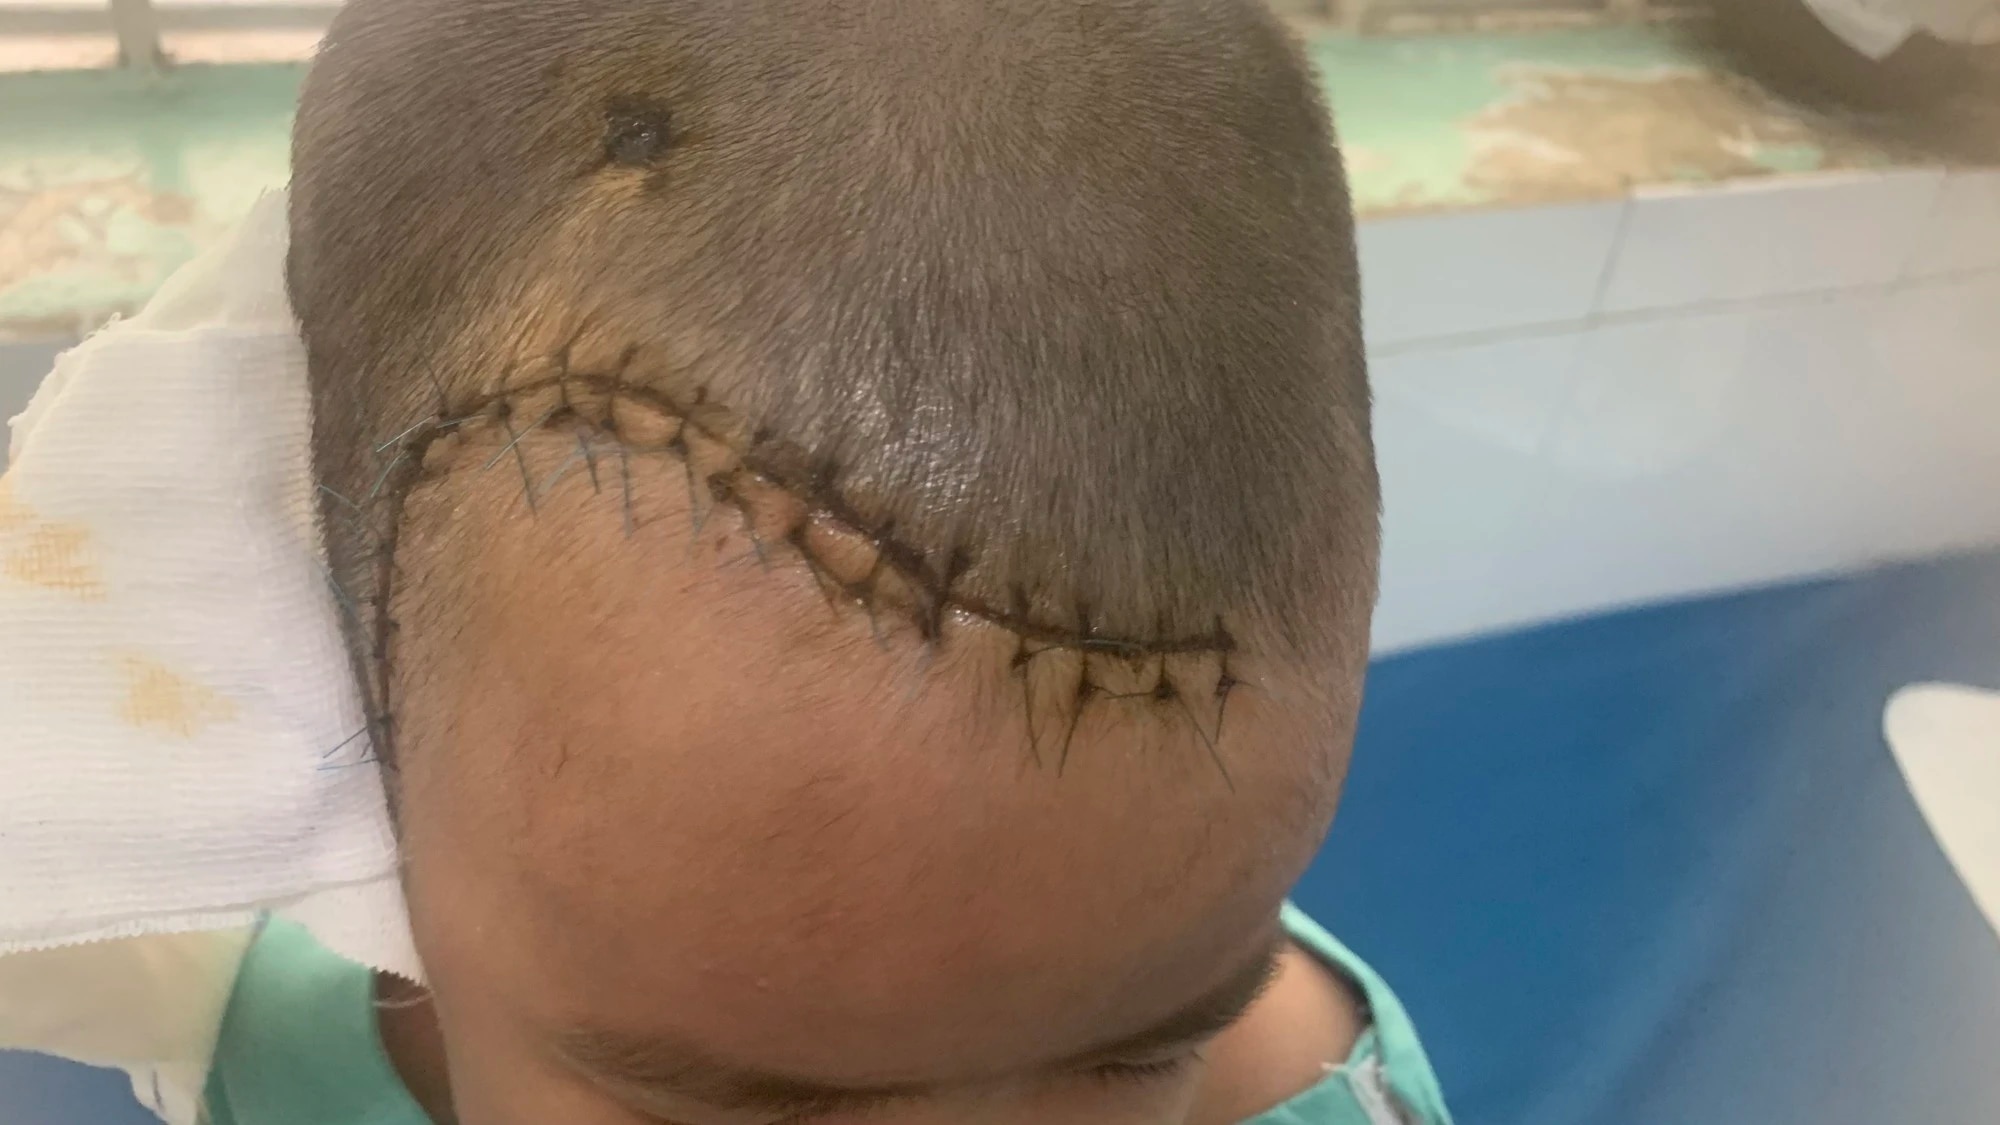 Té cầu thang, bé trai 4 tuổi bị tổn thương não nặng - Ảnh 1.